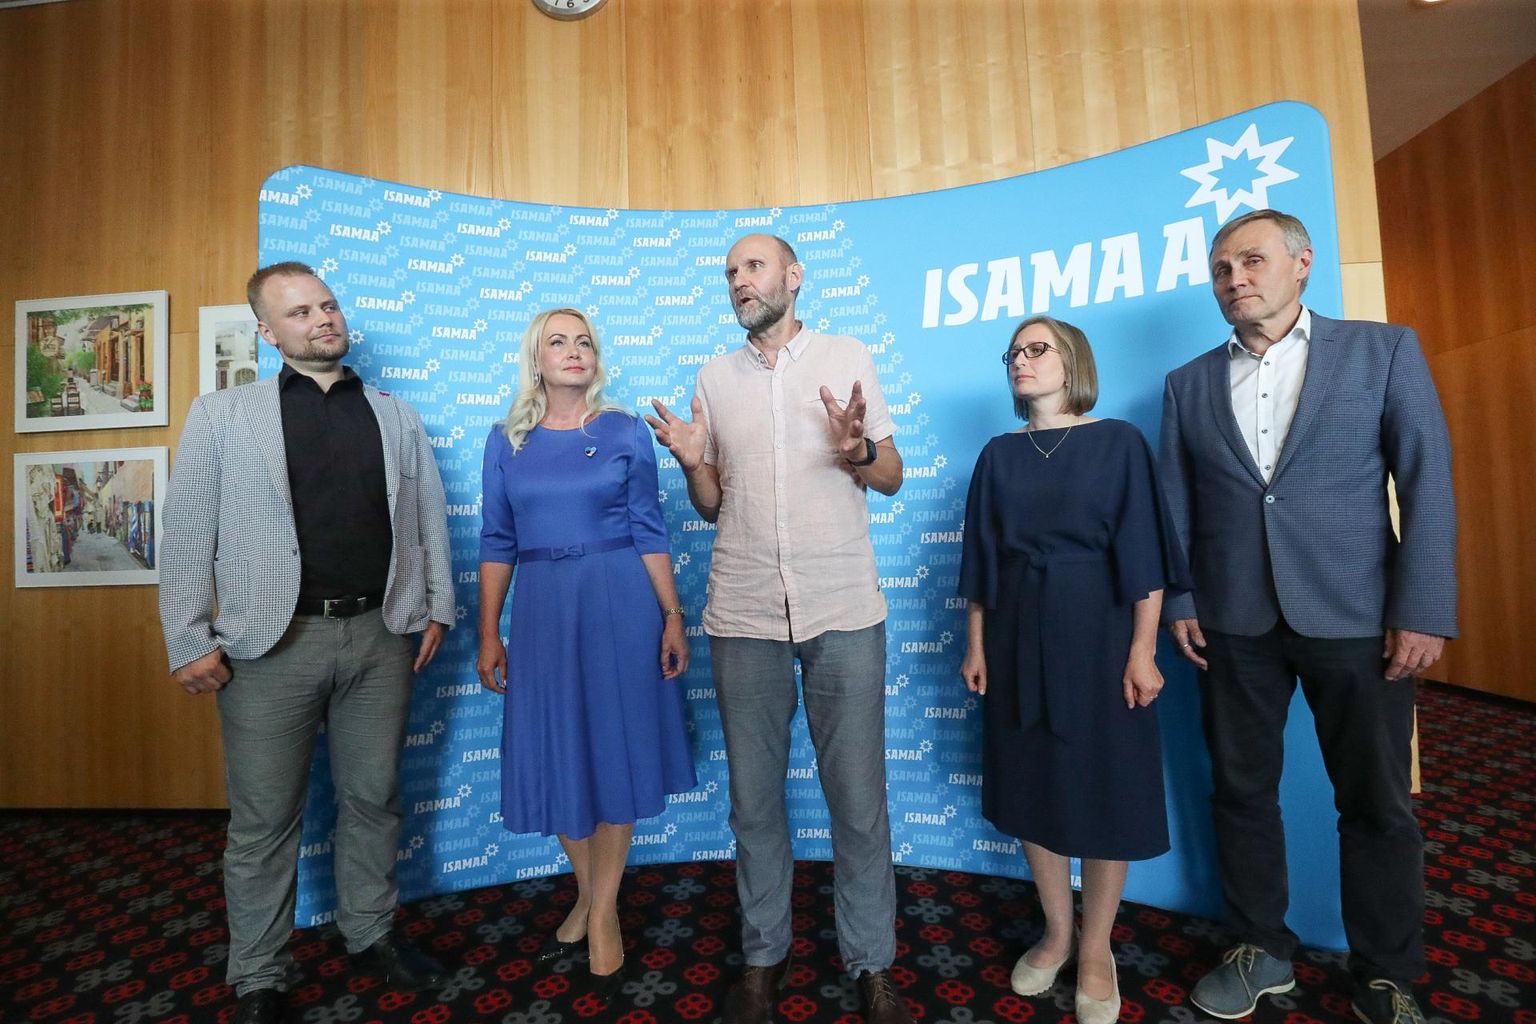 Ministerial candidates of Isamaa. Üllar Saaremäe (center) presents: Kristjan Järvan, Riina Solman, Lea Danilson-Järg, Tõnis Lukas.